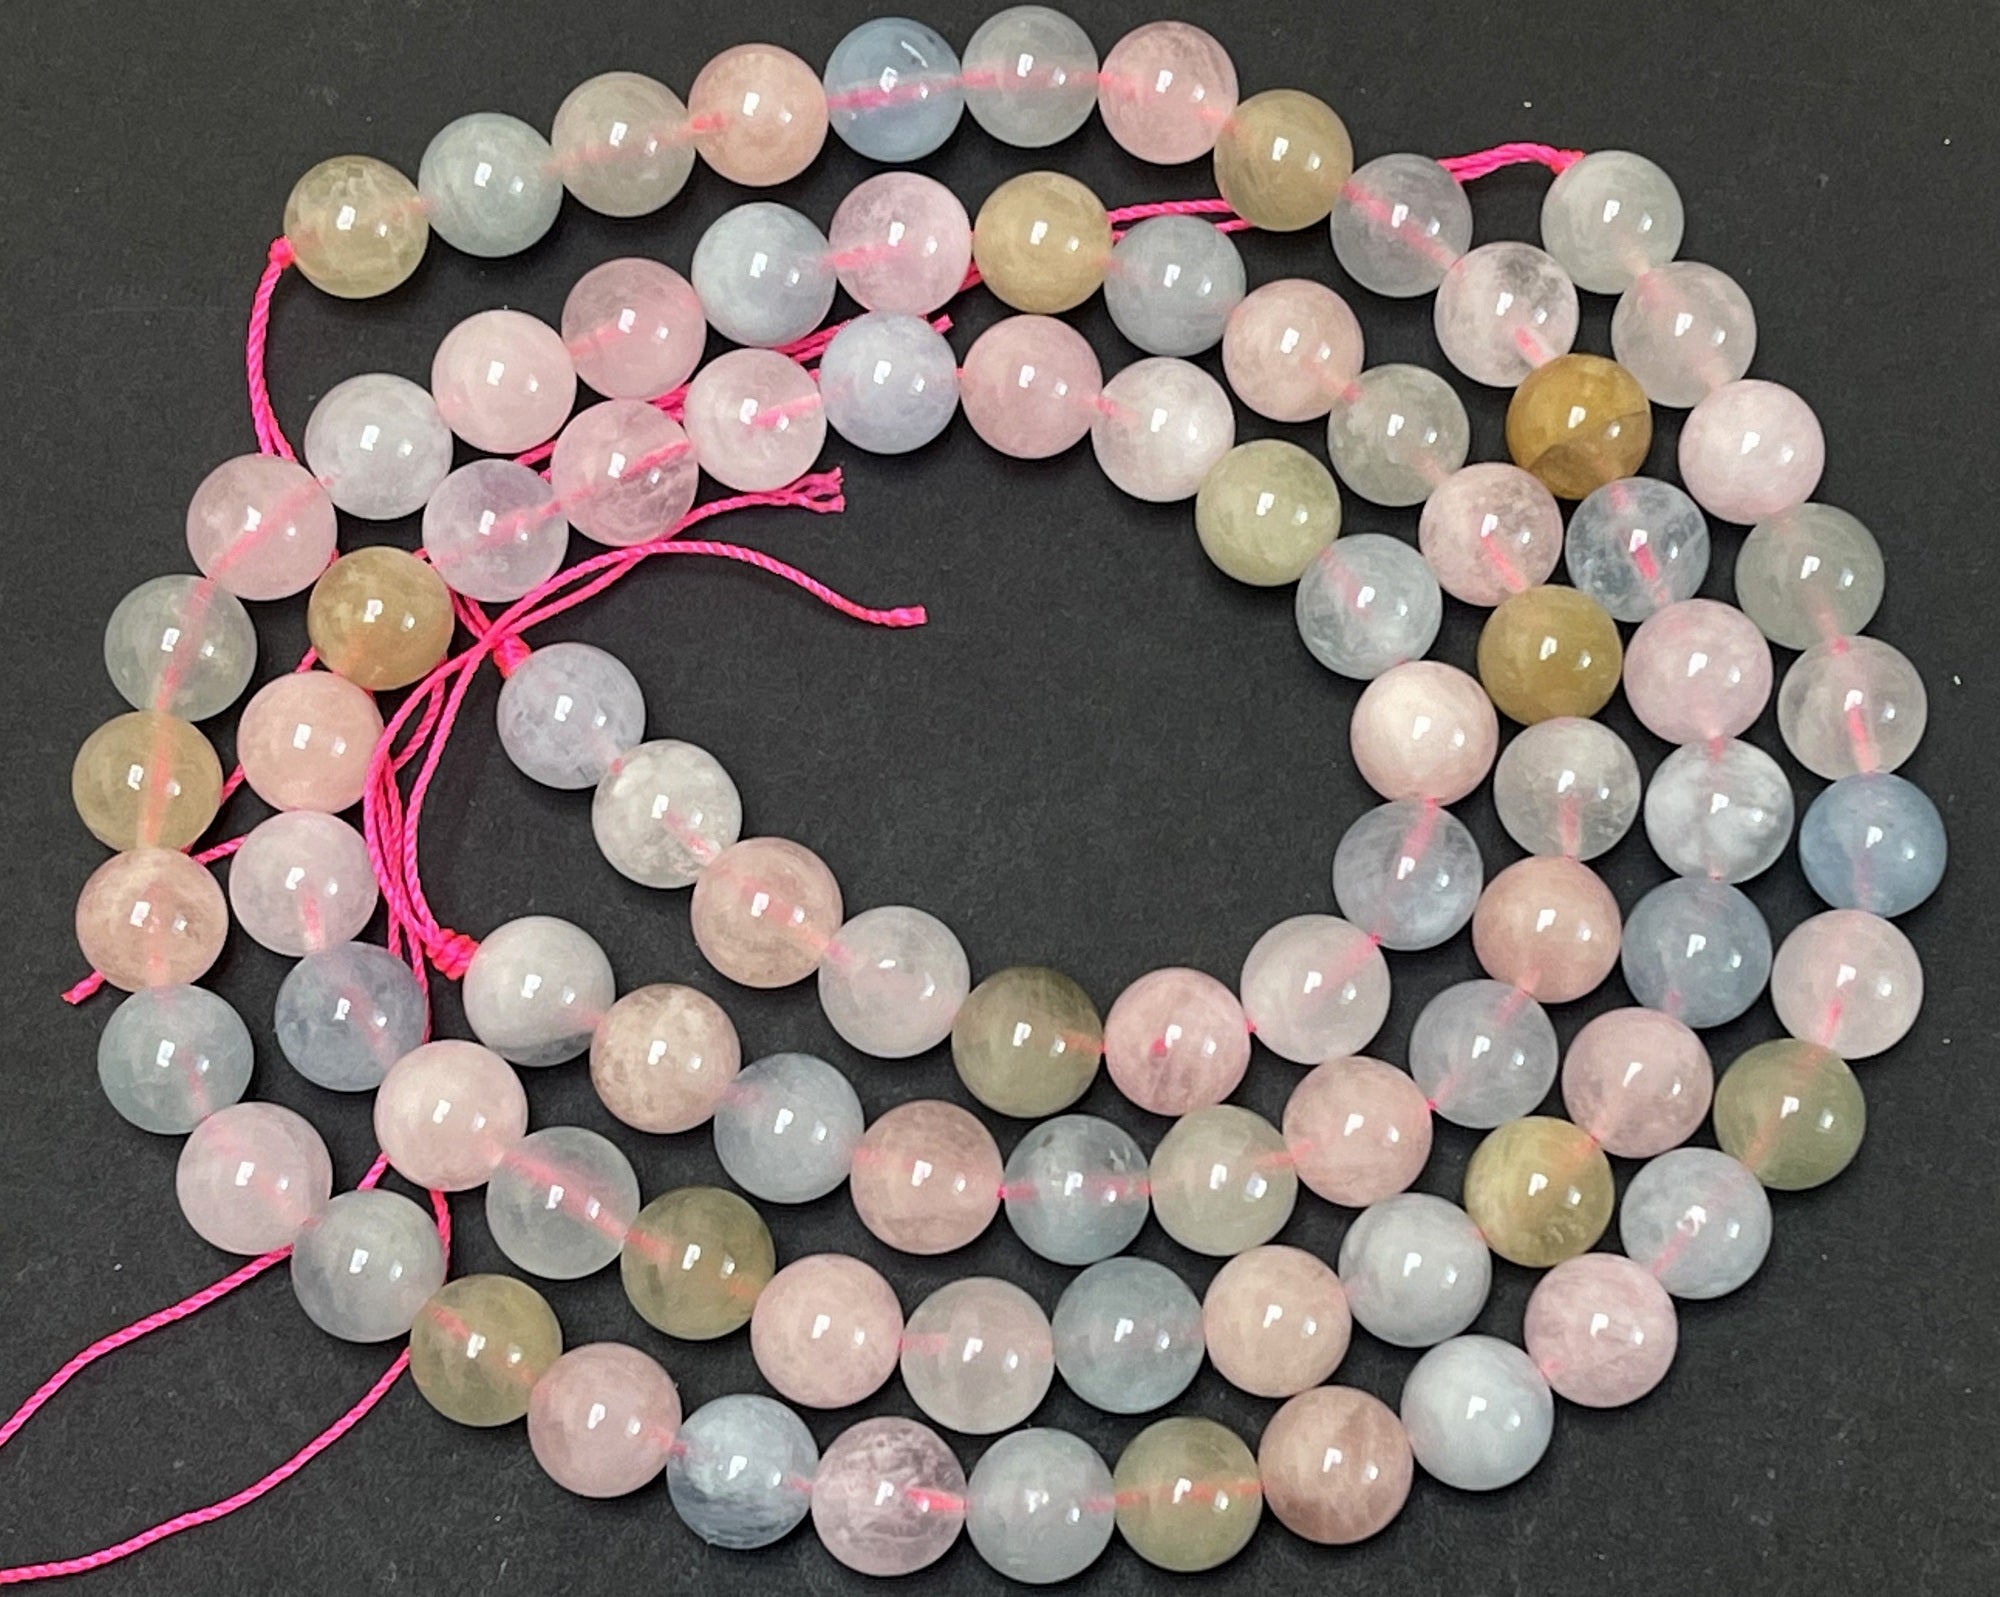 Morganite Beryl mix 8mm round natural gemstone beads 15.5" strand - Oz Beads 